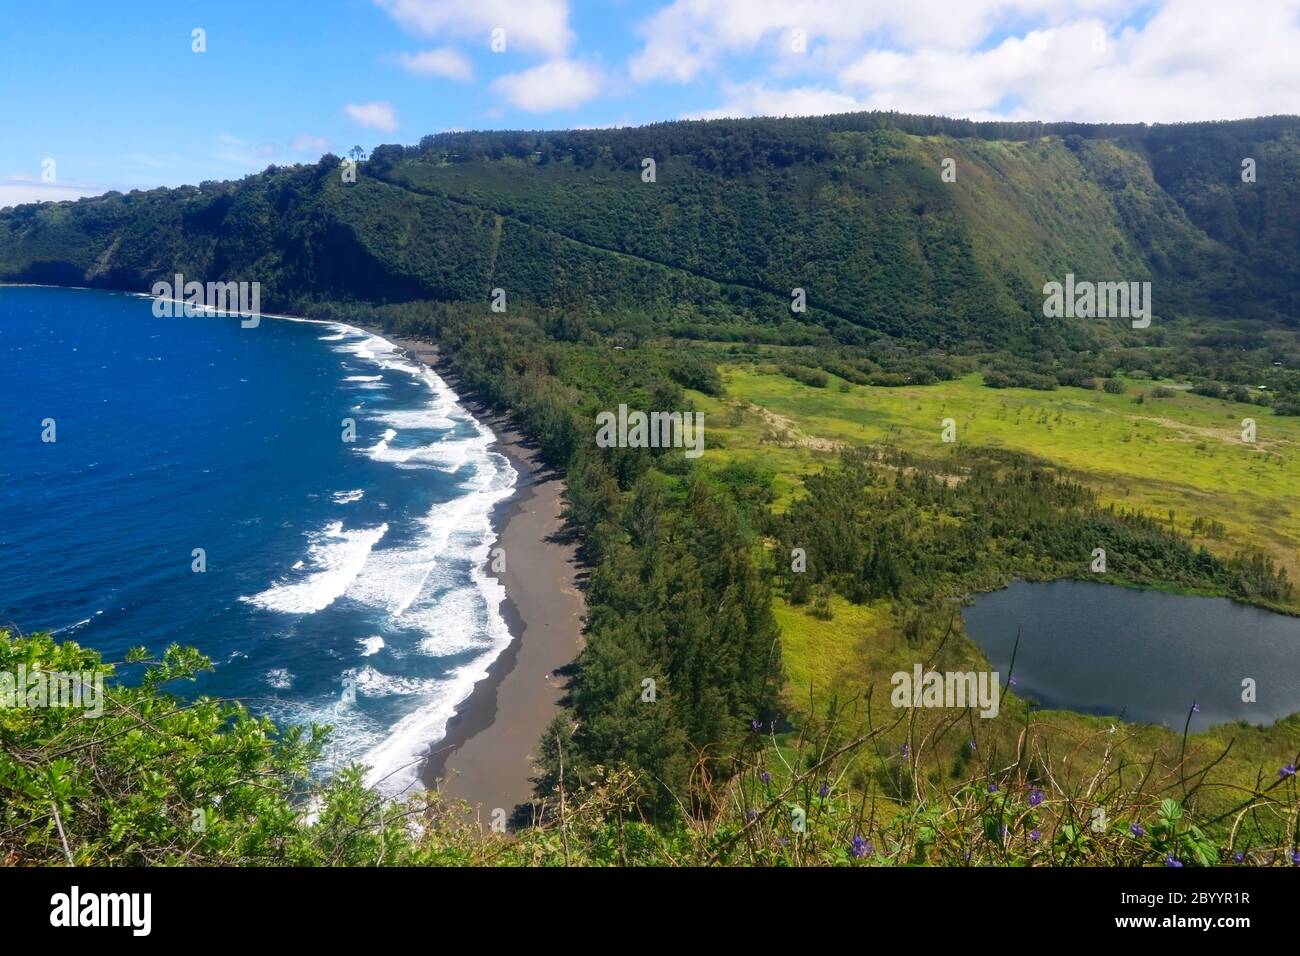 Incredibile paesaggio della Waipio Valley con scogliera di origine vulcanica nell'azzurro delle acque dell'oceano Pacifico con spiaggia di sabbia nera e valle con il ne residenziale Foto Stock